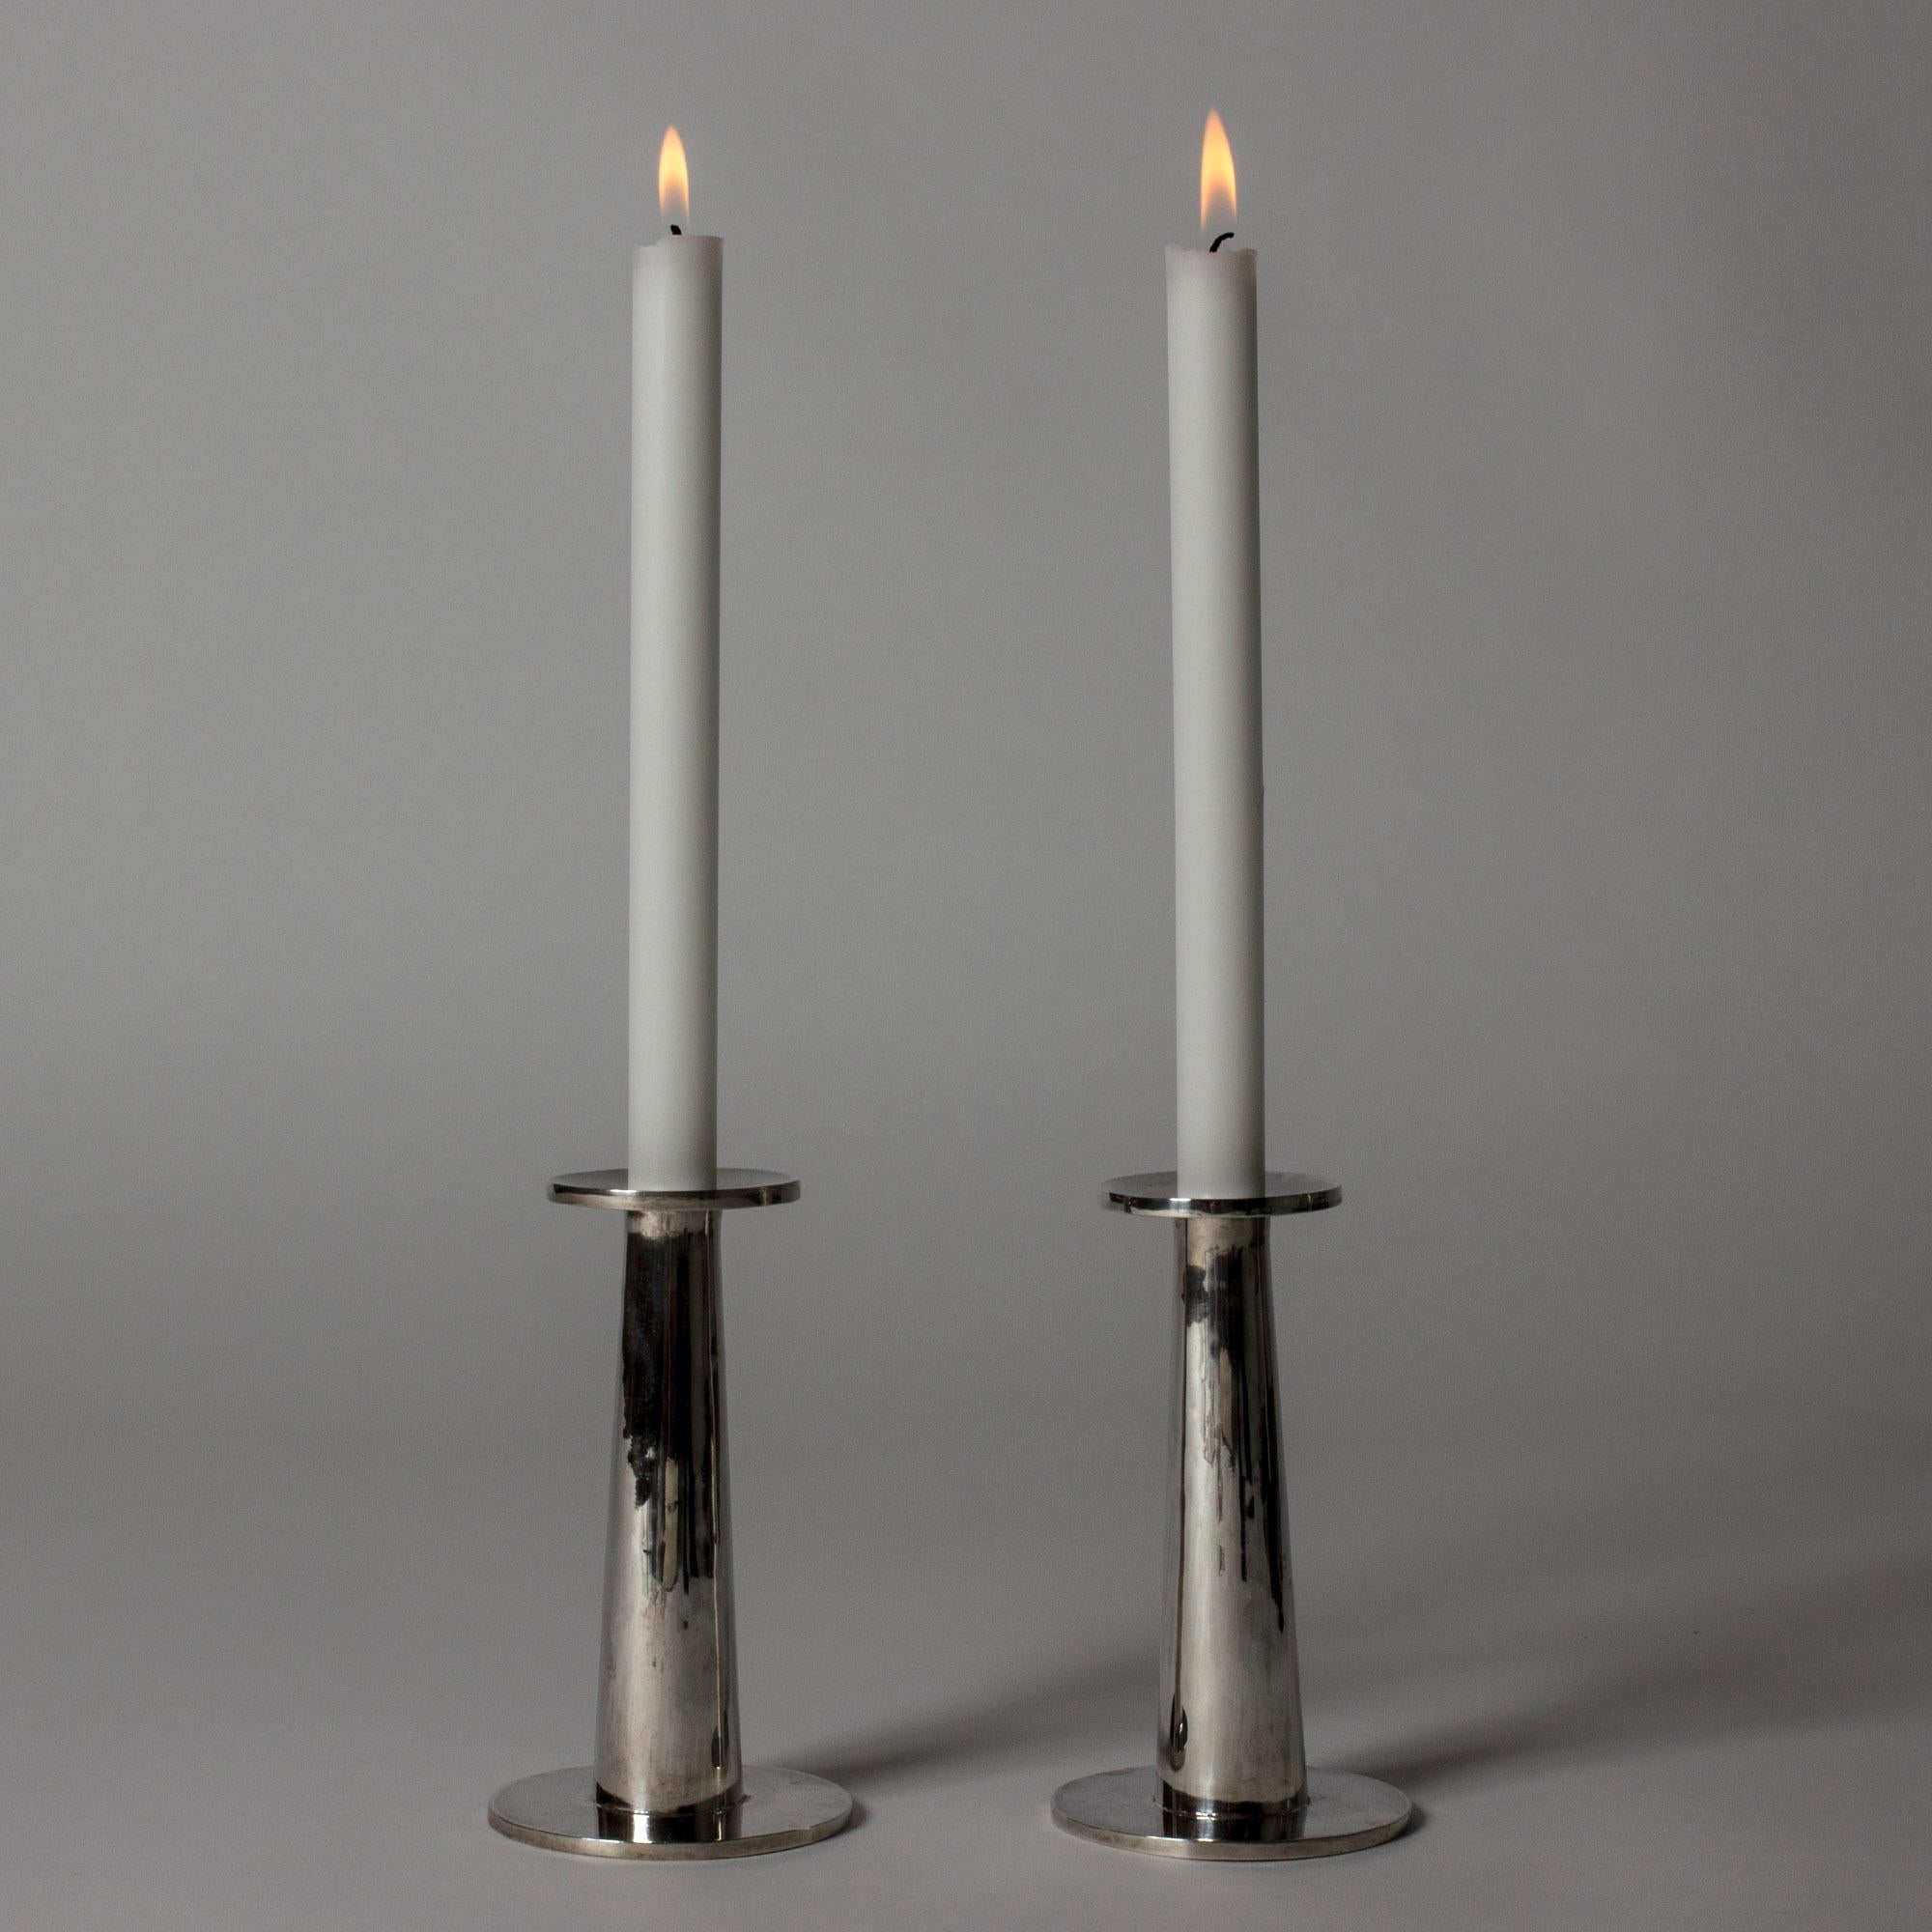 Ein Paar elegante silberne Kerzenhalter von Jarl Ölveborn in einem schlichten, modernistischen Design. Die handgehämmerte Oberfläche verleiht ihm eine schöne, subtile Lebendigkeit.